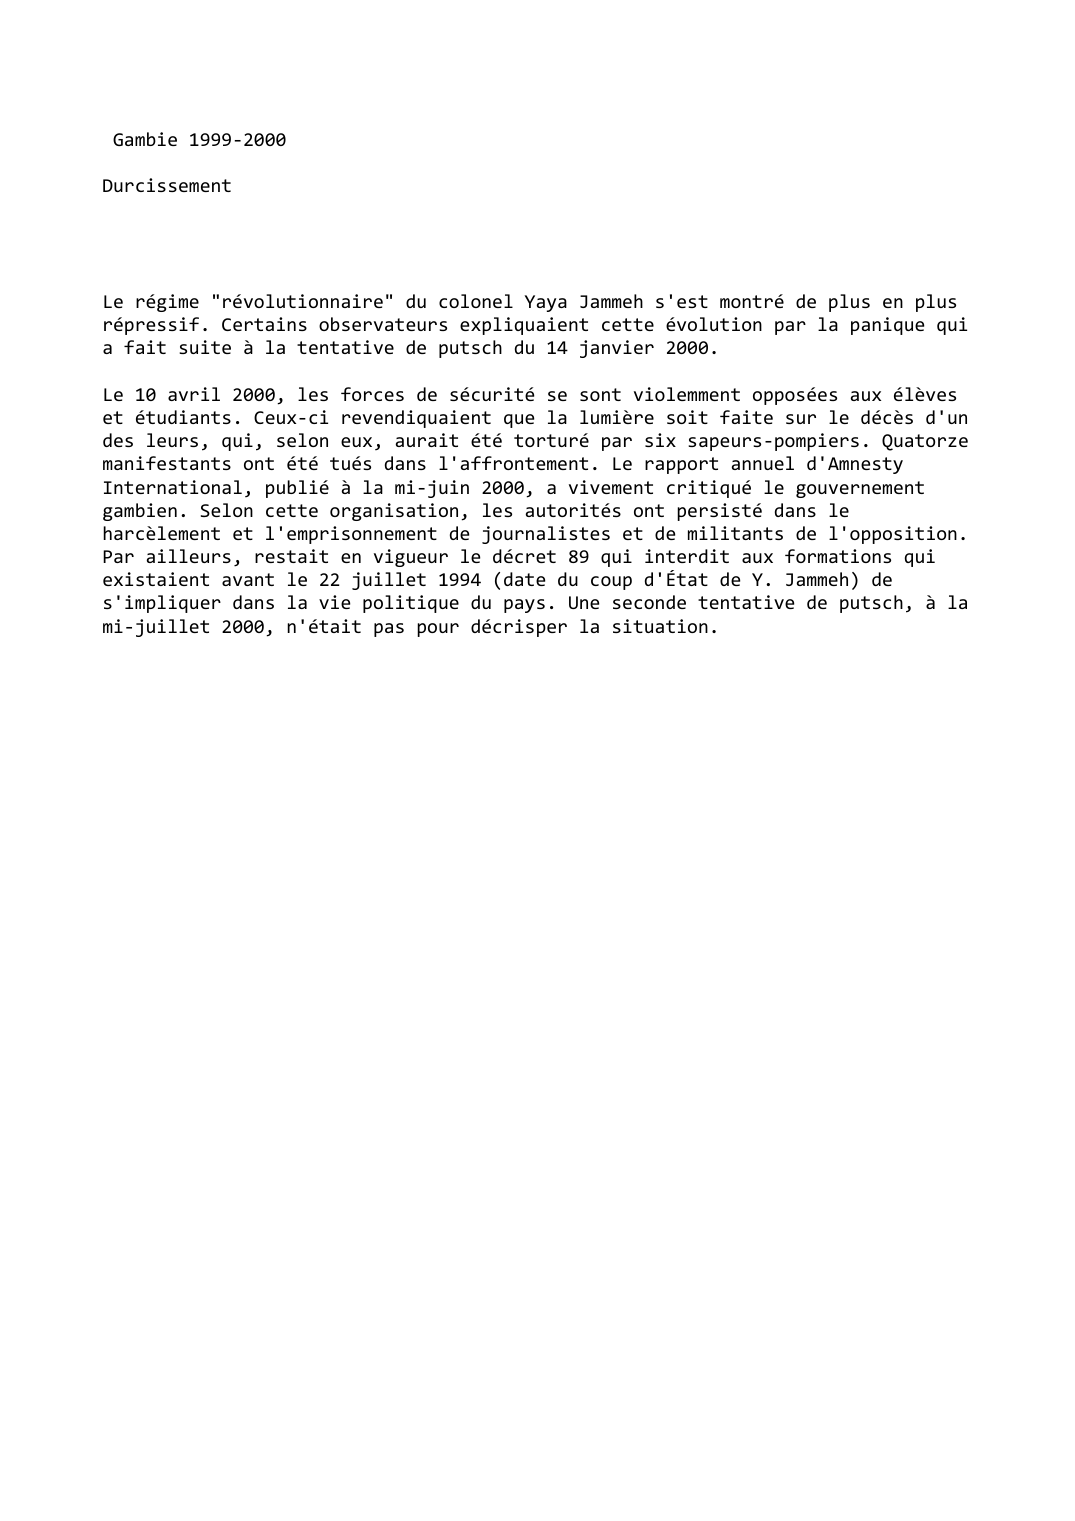 Prévisualisation du document Gambie (1999-2000): Durcissement